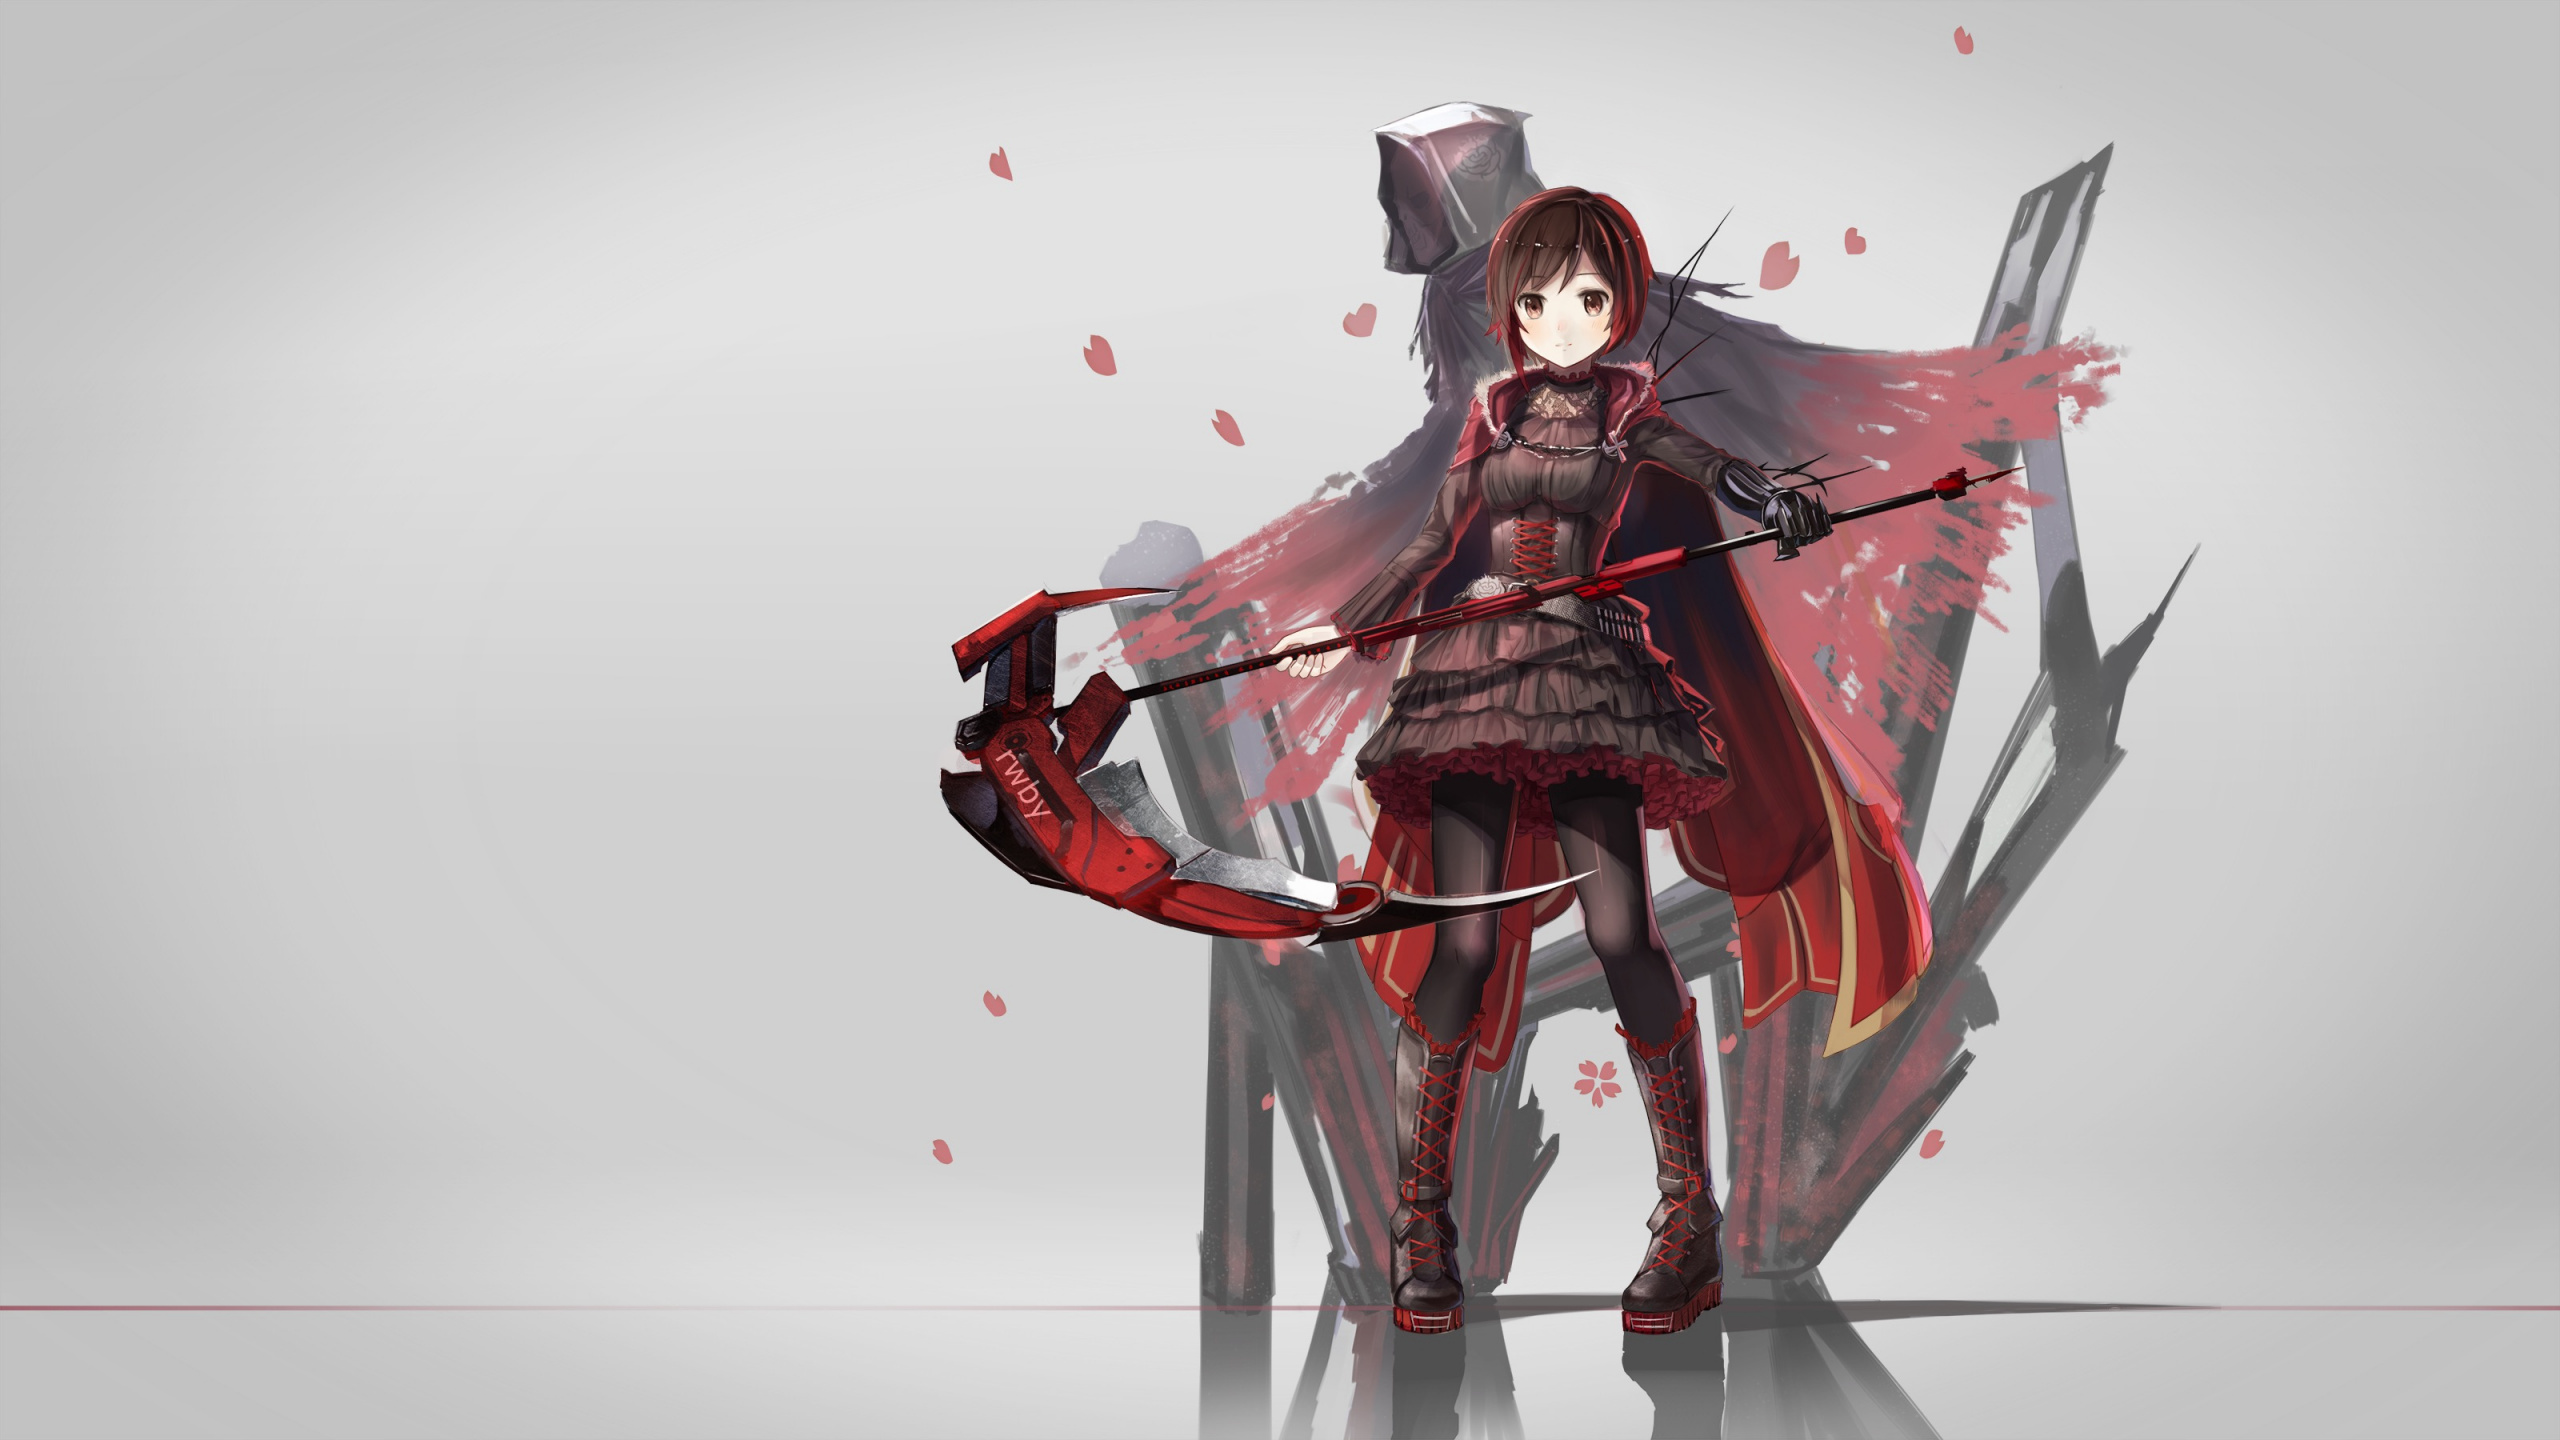 Frau im Roten Und Schwarzen Kleid Anime-Charakter. Wallpaper in 2560x1440 Resolution